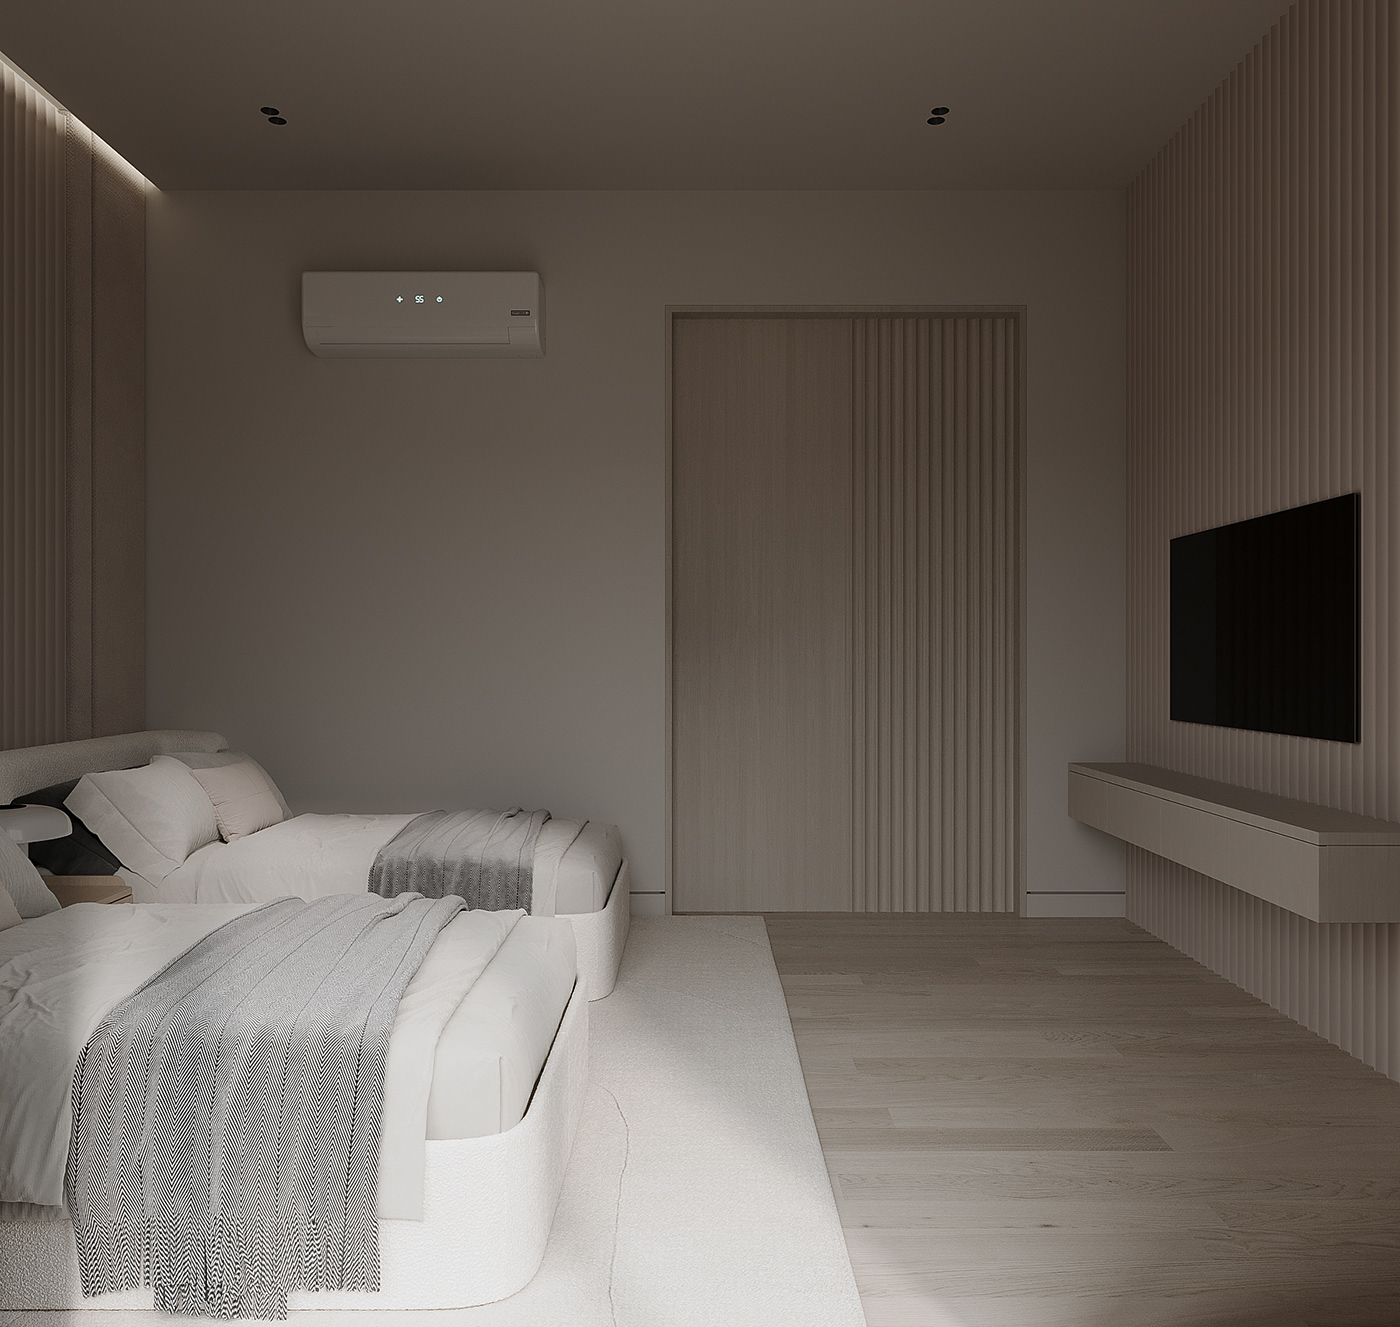 bedroom Interior architecture modern corona Render visualization free decor interior design 